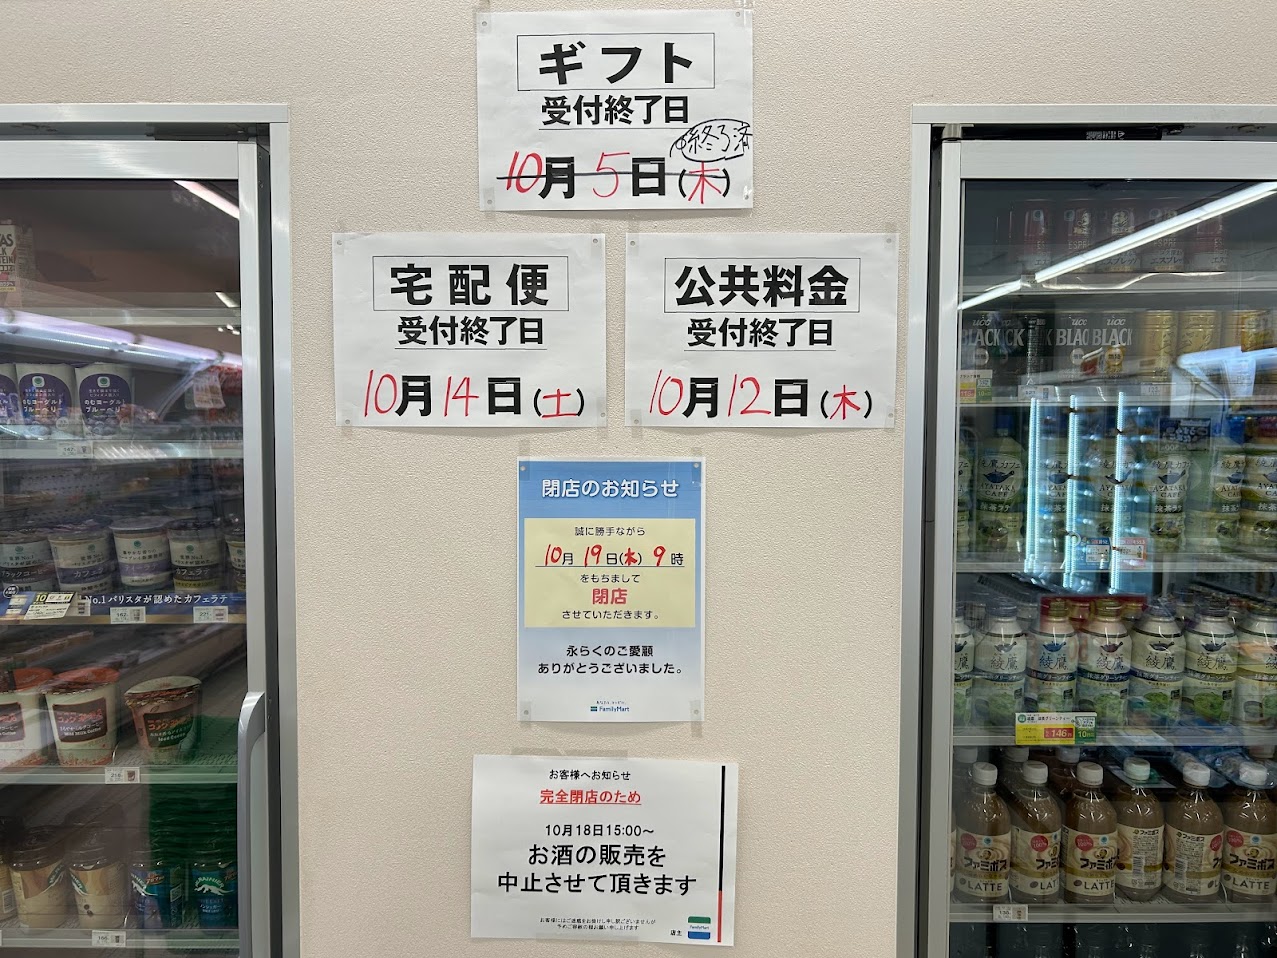 ファミリーマート喜連二丁目店閉店のお知らせ2